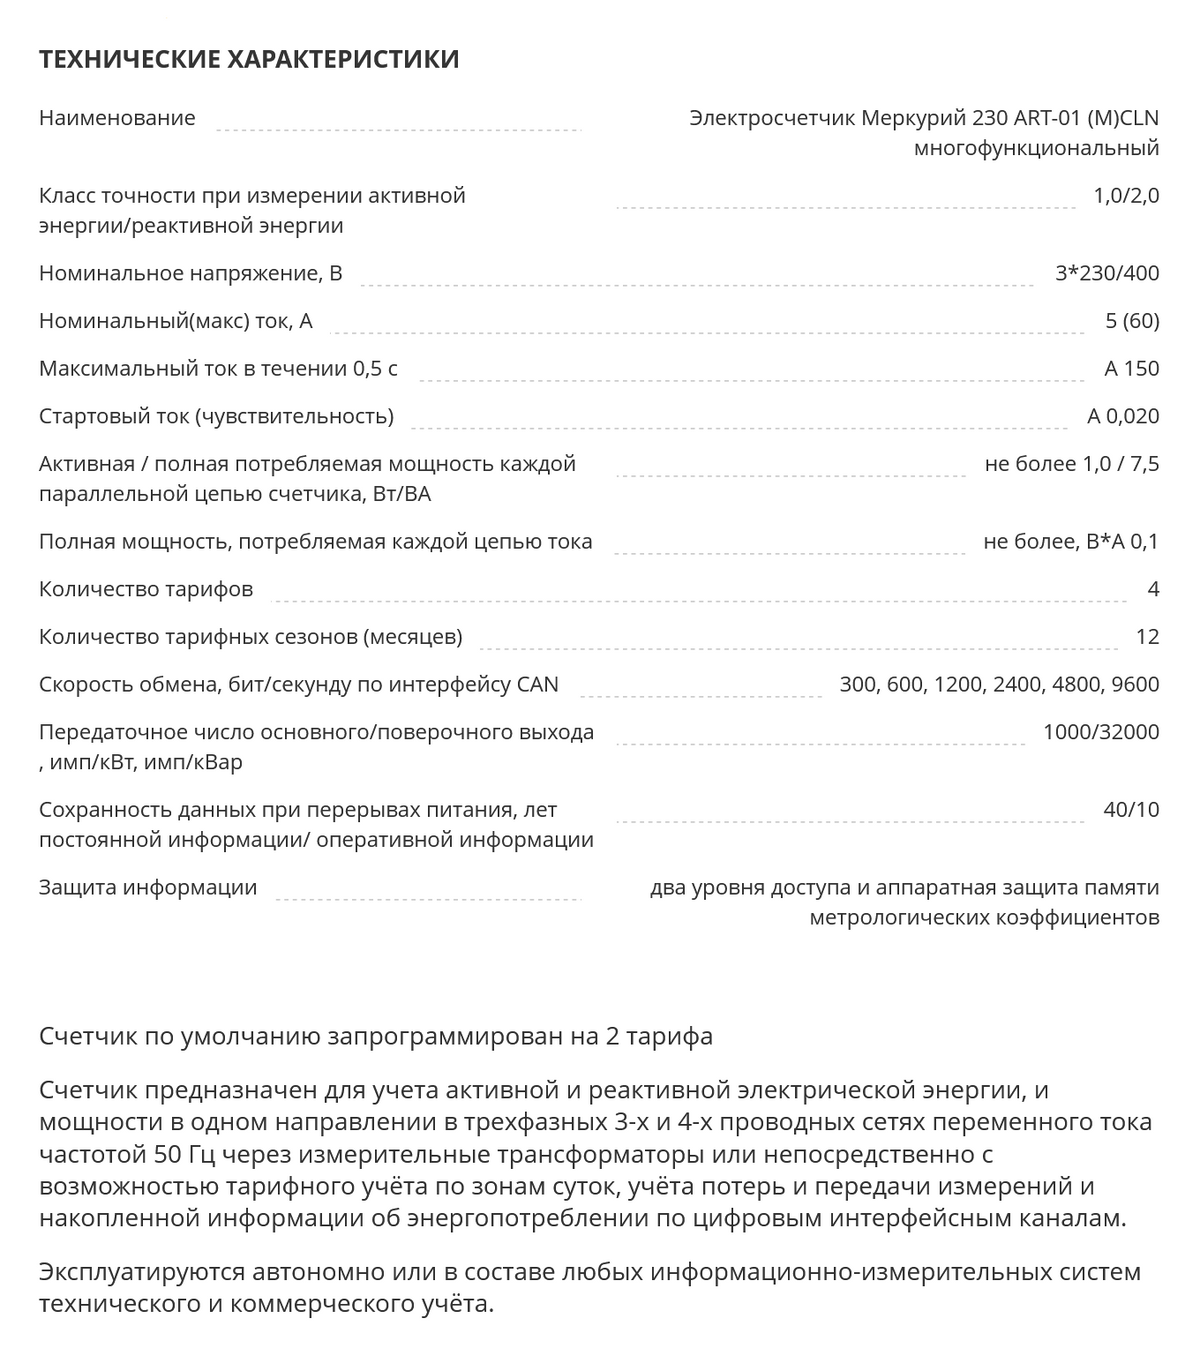 Технические характеристики многотарифного прибора учета. Источник: mosenergosbyt.ru